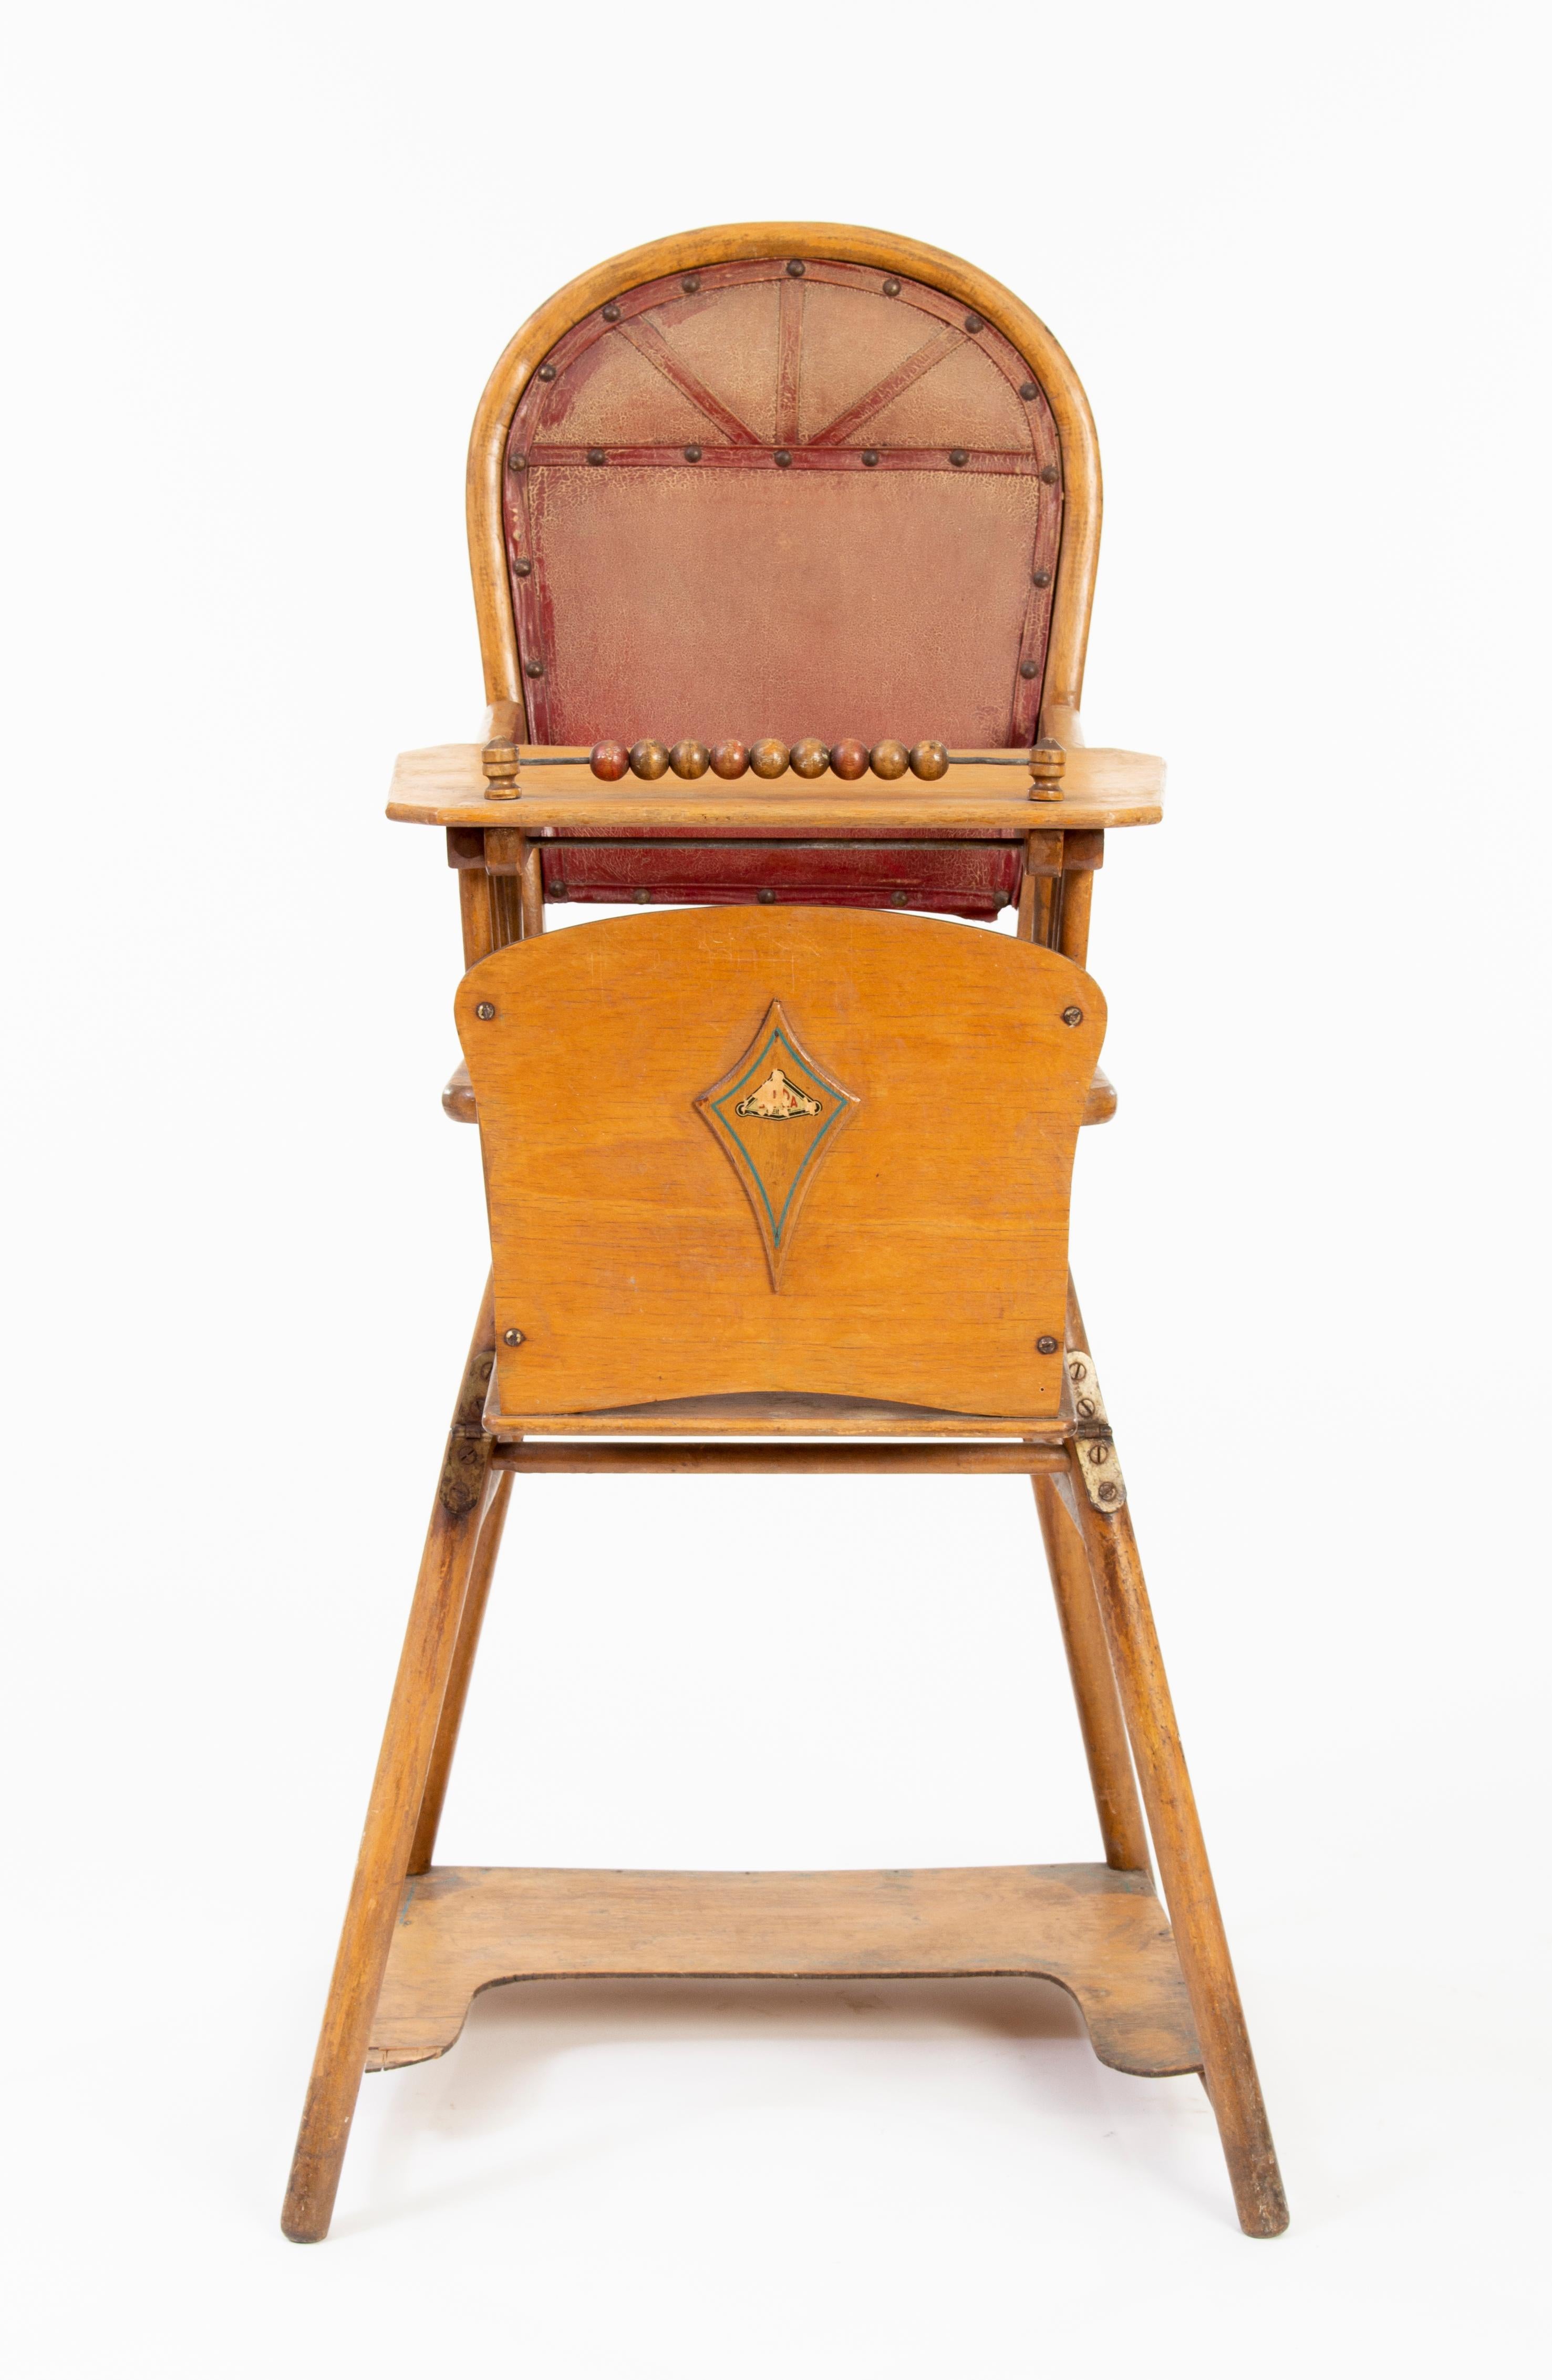 Chaise haute antique pour enfants avec fonctions boulier et chaise pot.
Fabriqué en bois de hêtre étuvé, avec couverture en cuir.
Fabriqué vers 1910.
 